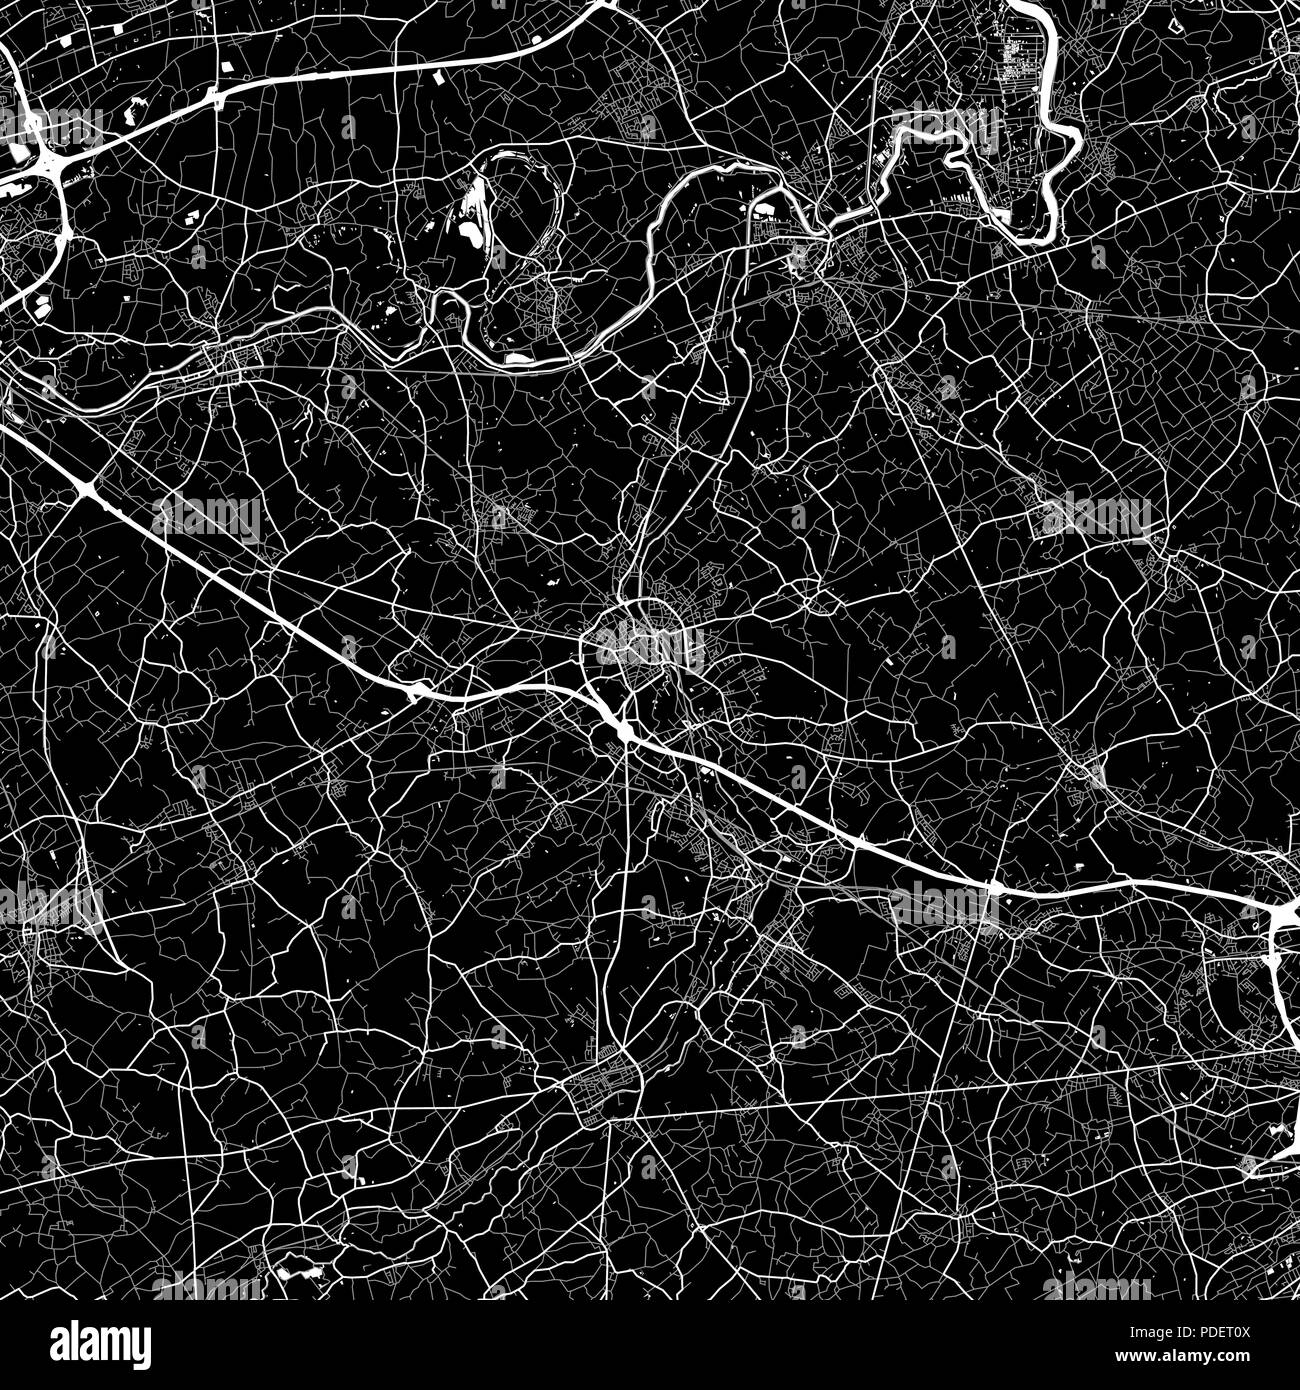 Mappa Area di Aalst, Belgio. Sfondo scuro versione per una infografica e marketing. Questa mappa di Aalst, Regione fiamminga, contiene strade, vie navigabili un Illustrazione Vettoriale